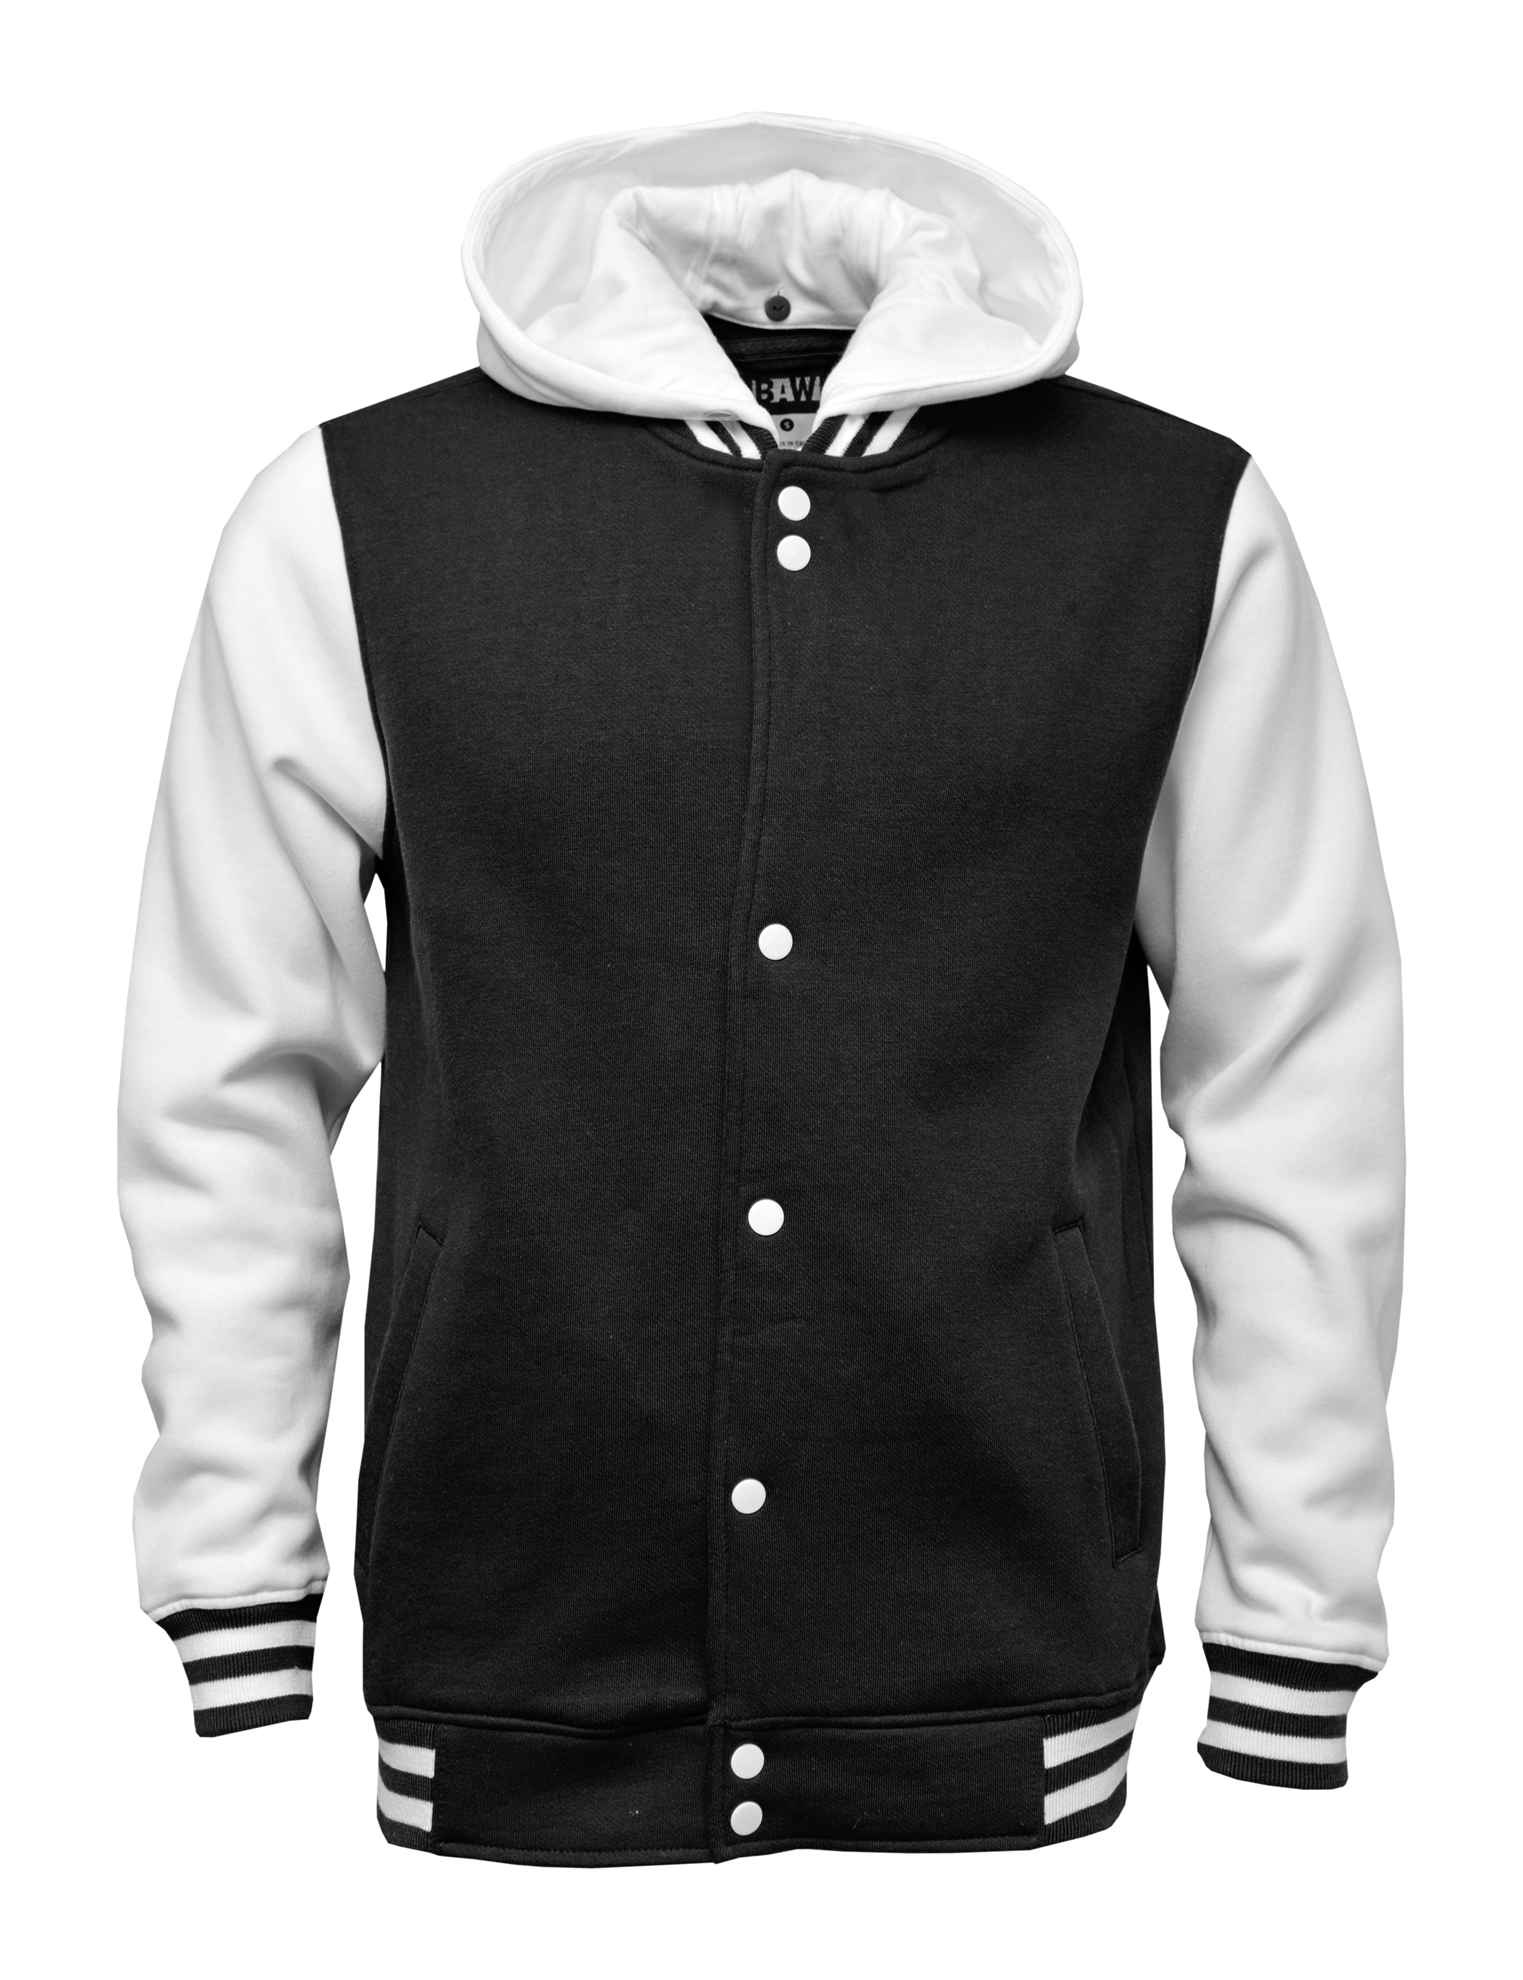 BAW Athletic Wear B7000Y - Youth Letterman Varsity Jacket